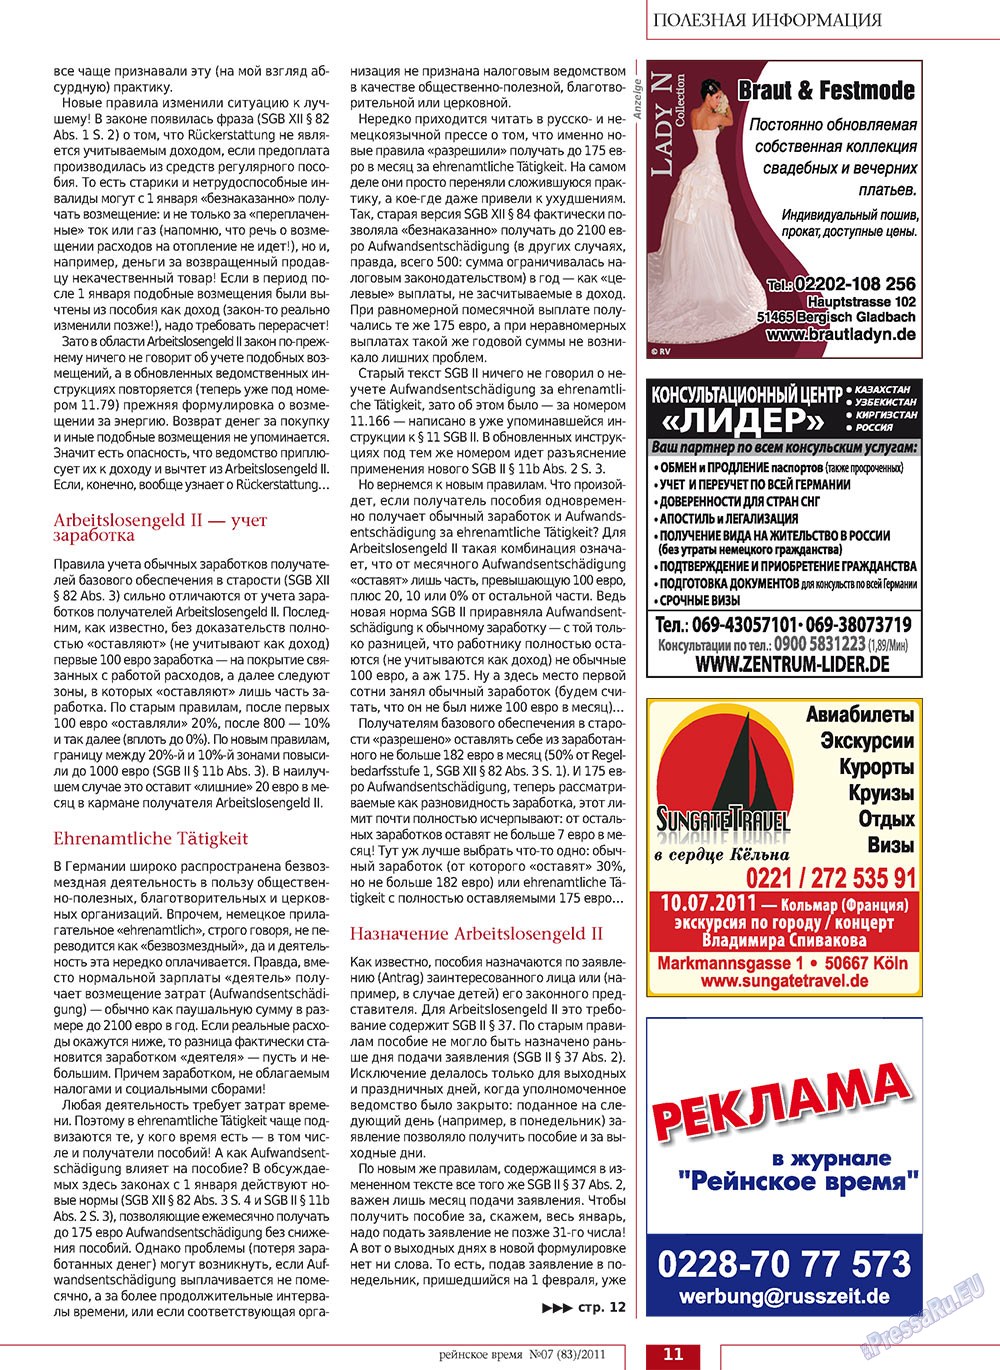 Rejnskoe vremja (Zeitschrift). 2011 Jahr, Ausgabe 7, Seite 11